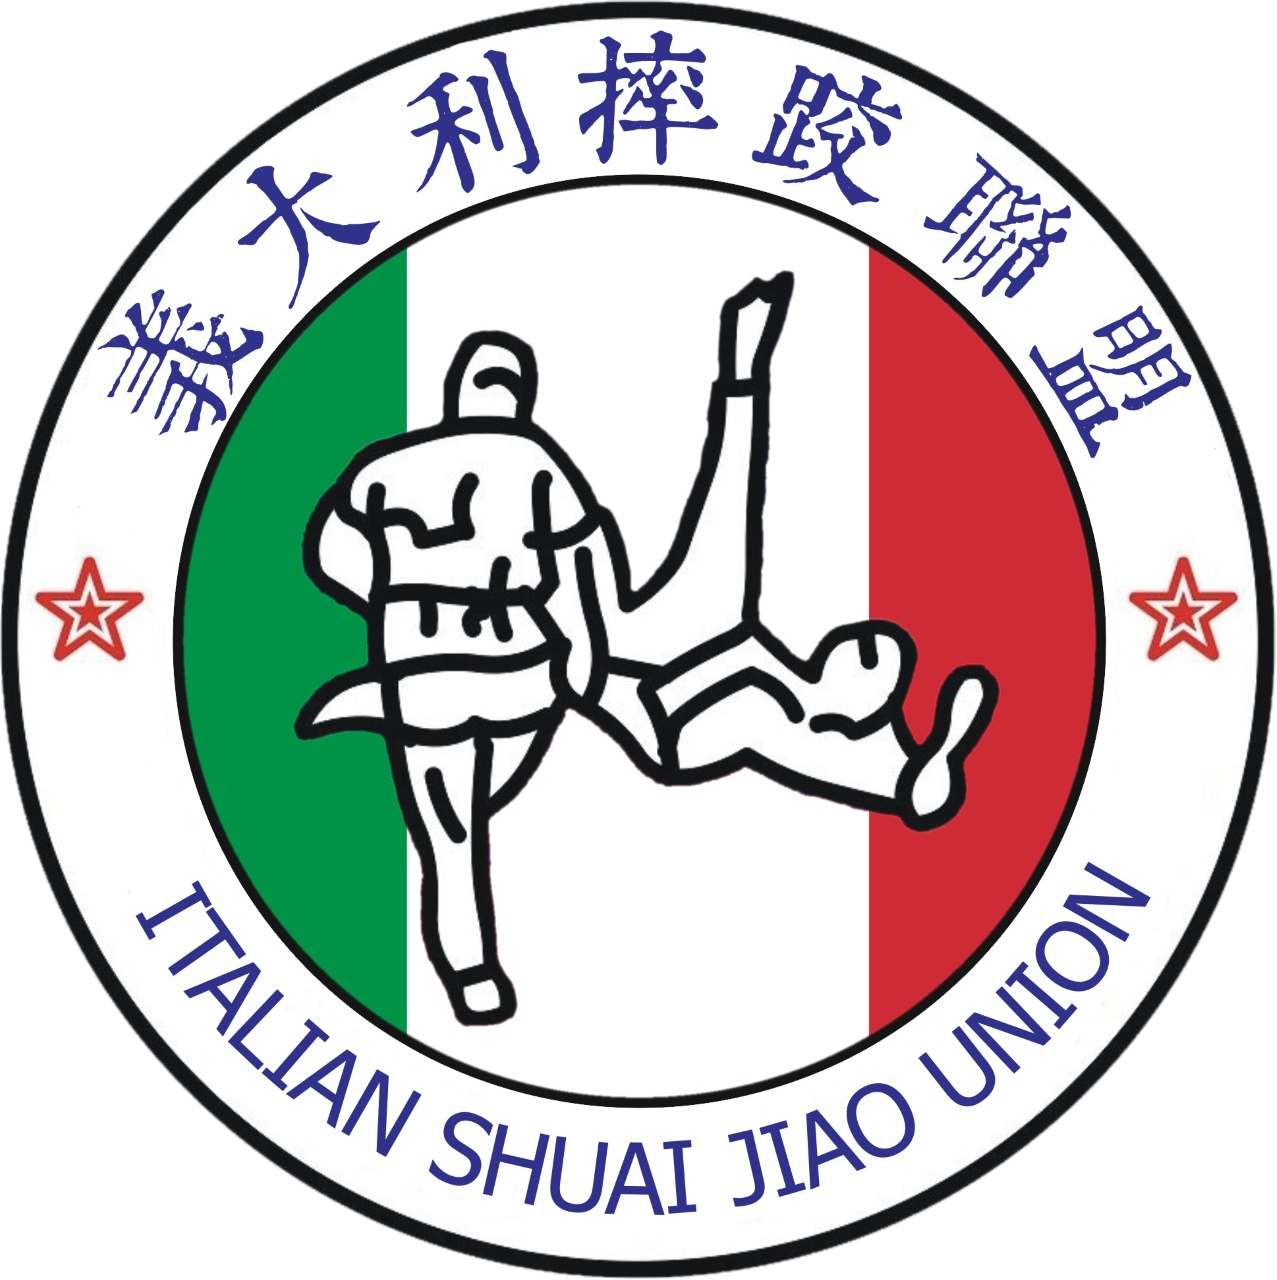 Italian Shuai Jiao Union Logo